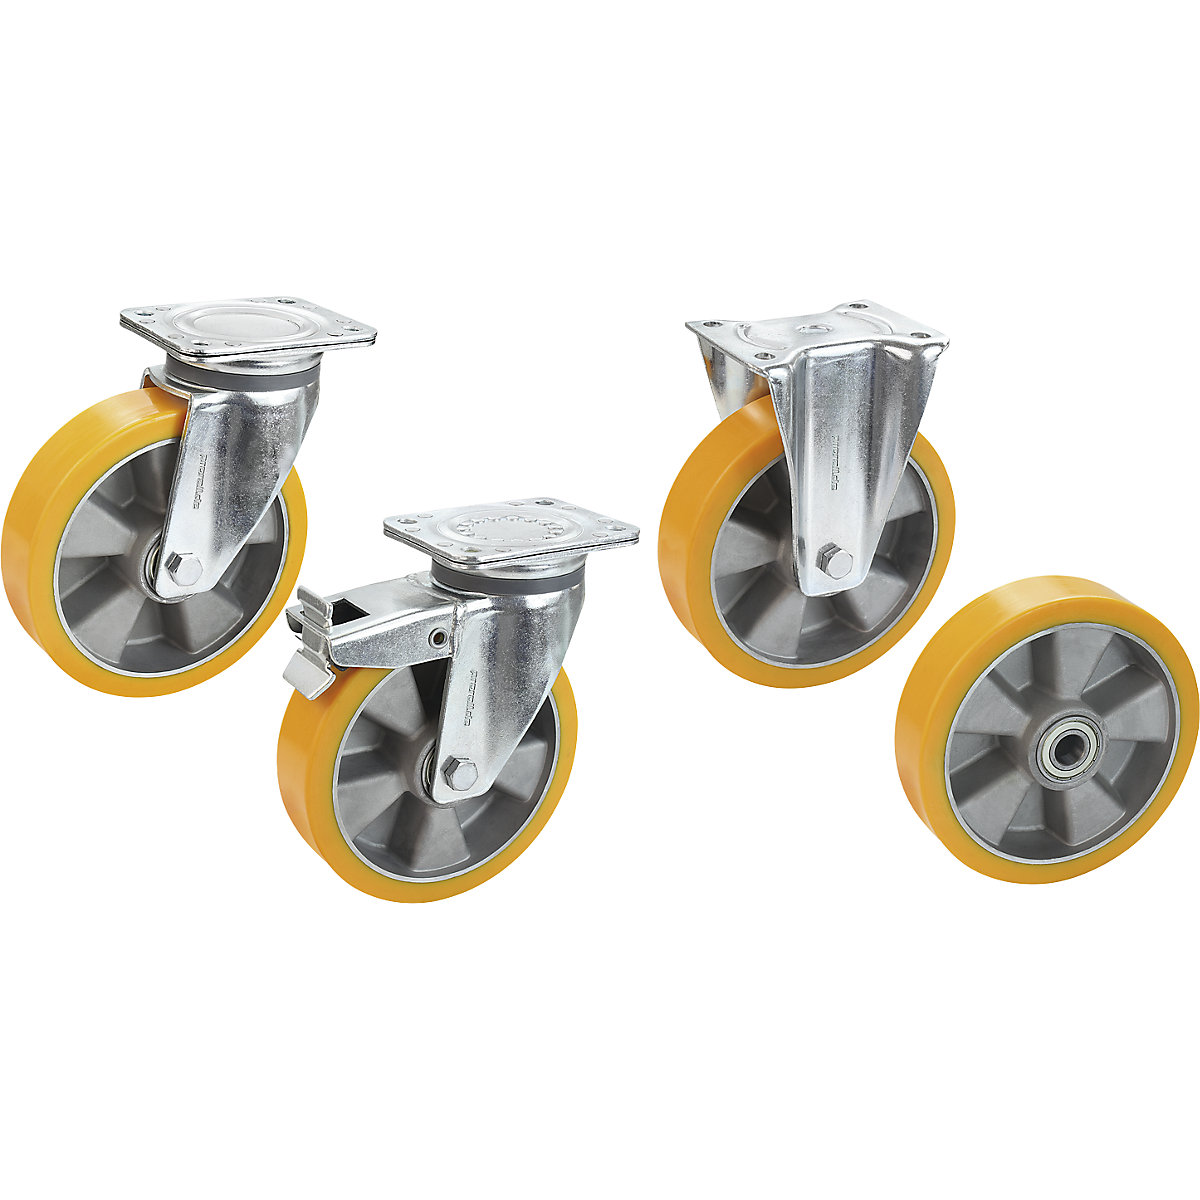 PU kotač na aluminijskom naplatku – Proroll (Prikaz proizvoda 3)-2